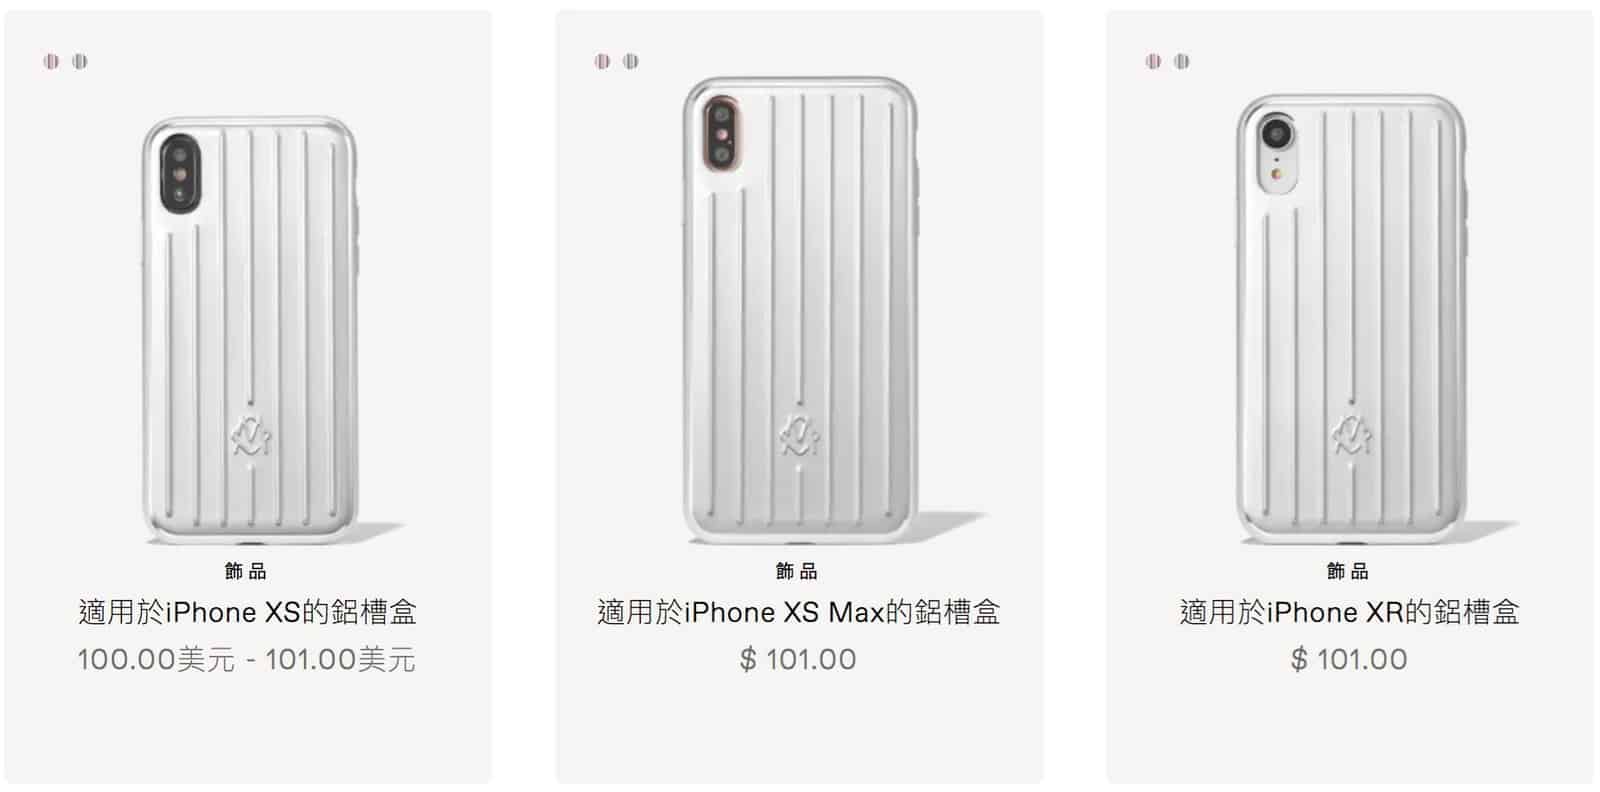 rimowa iphone case hk